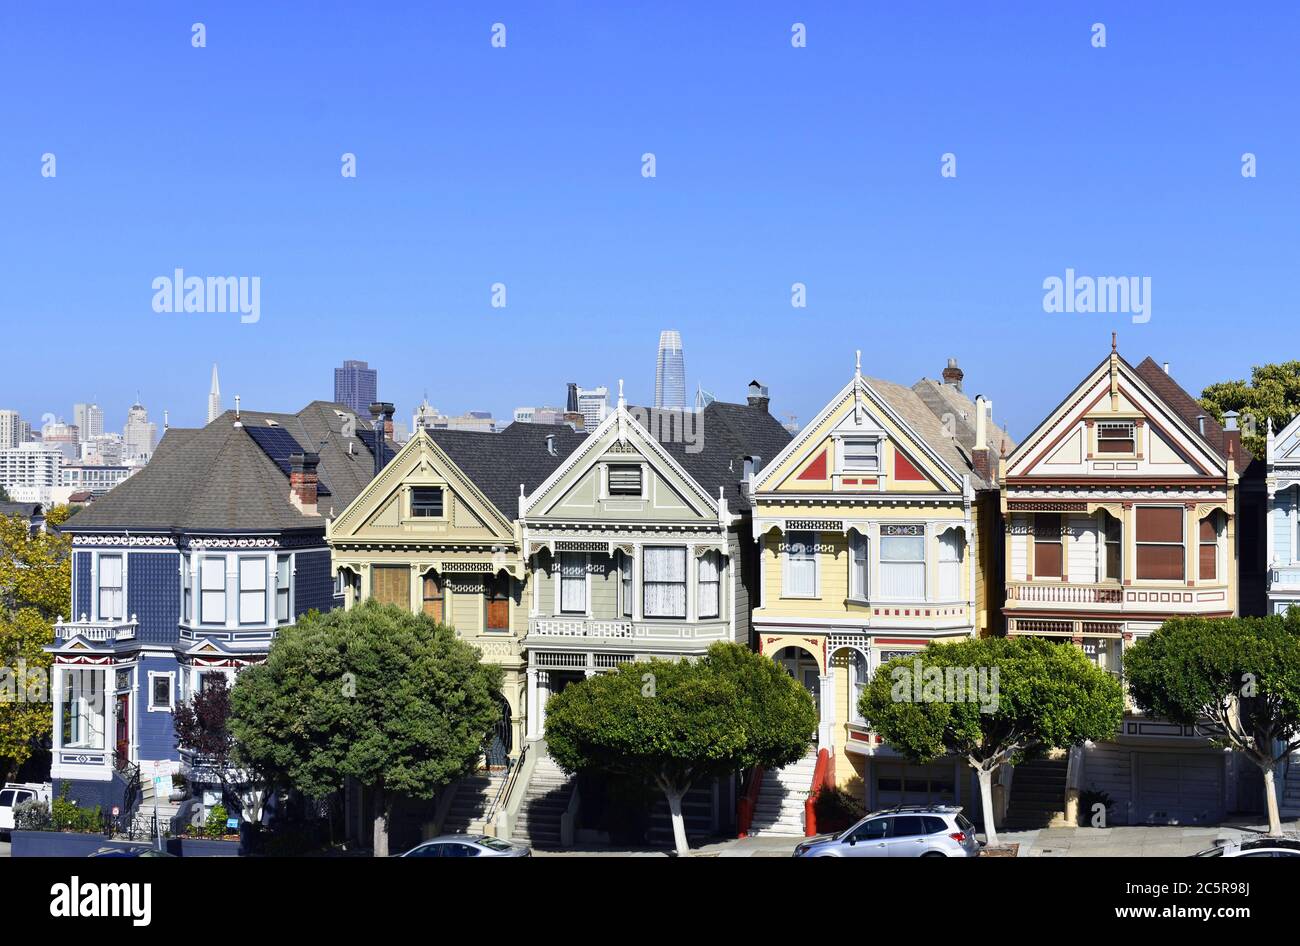 Le Signore dipinte da Alamo Square Park. Lo skyline del centro di San Francisco e la Transamerica Pyramid si possono vedere dietro le case dell'epoca vittoriana. Foto Stock